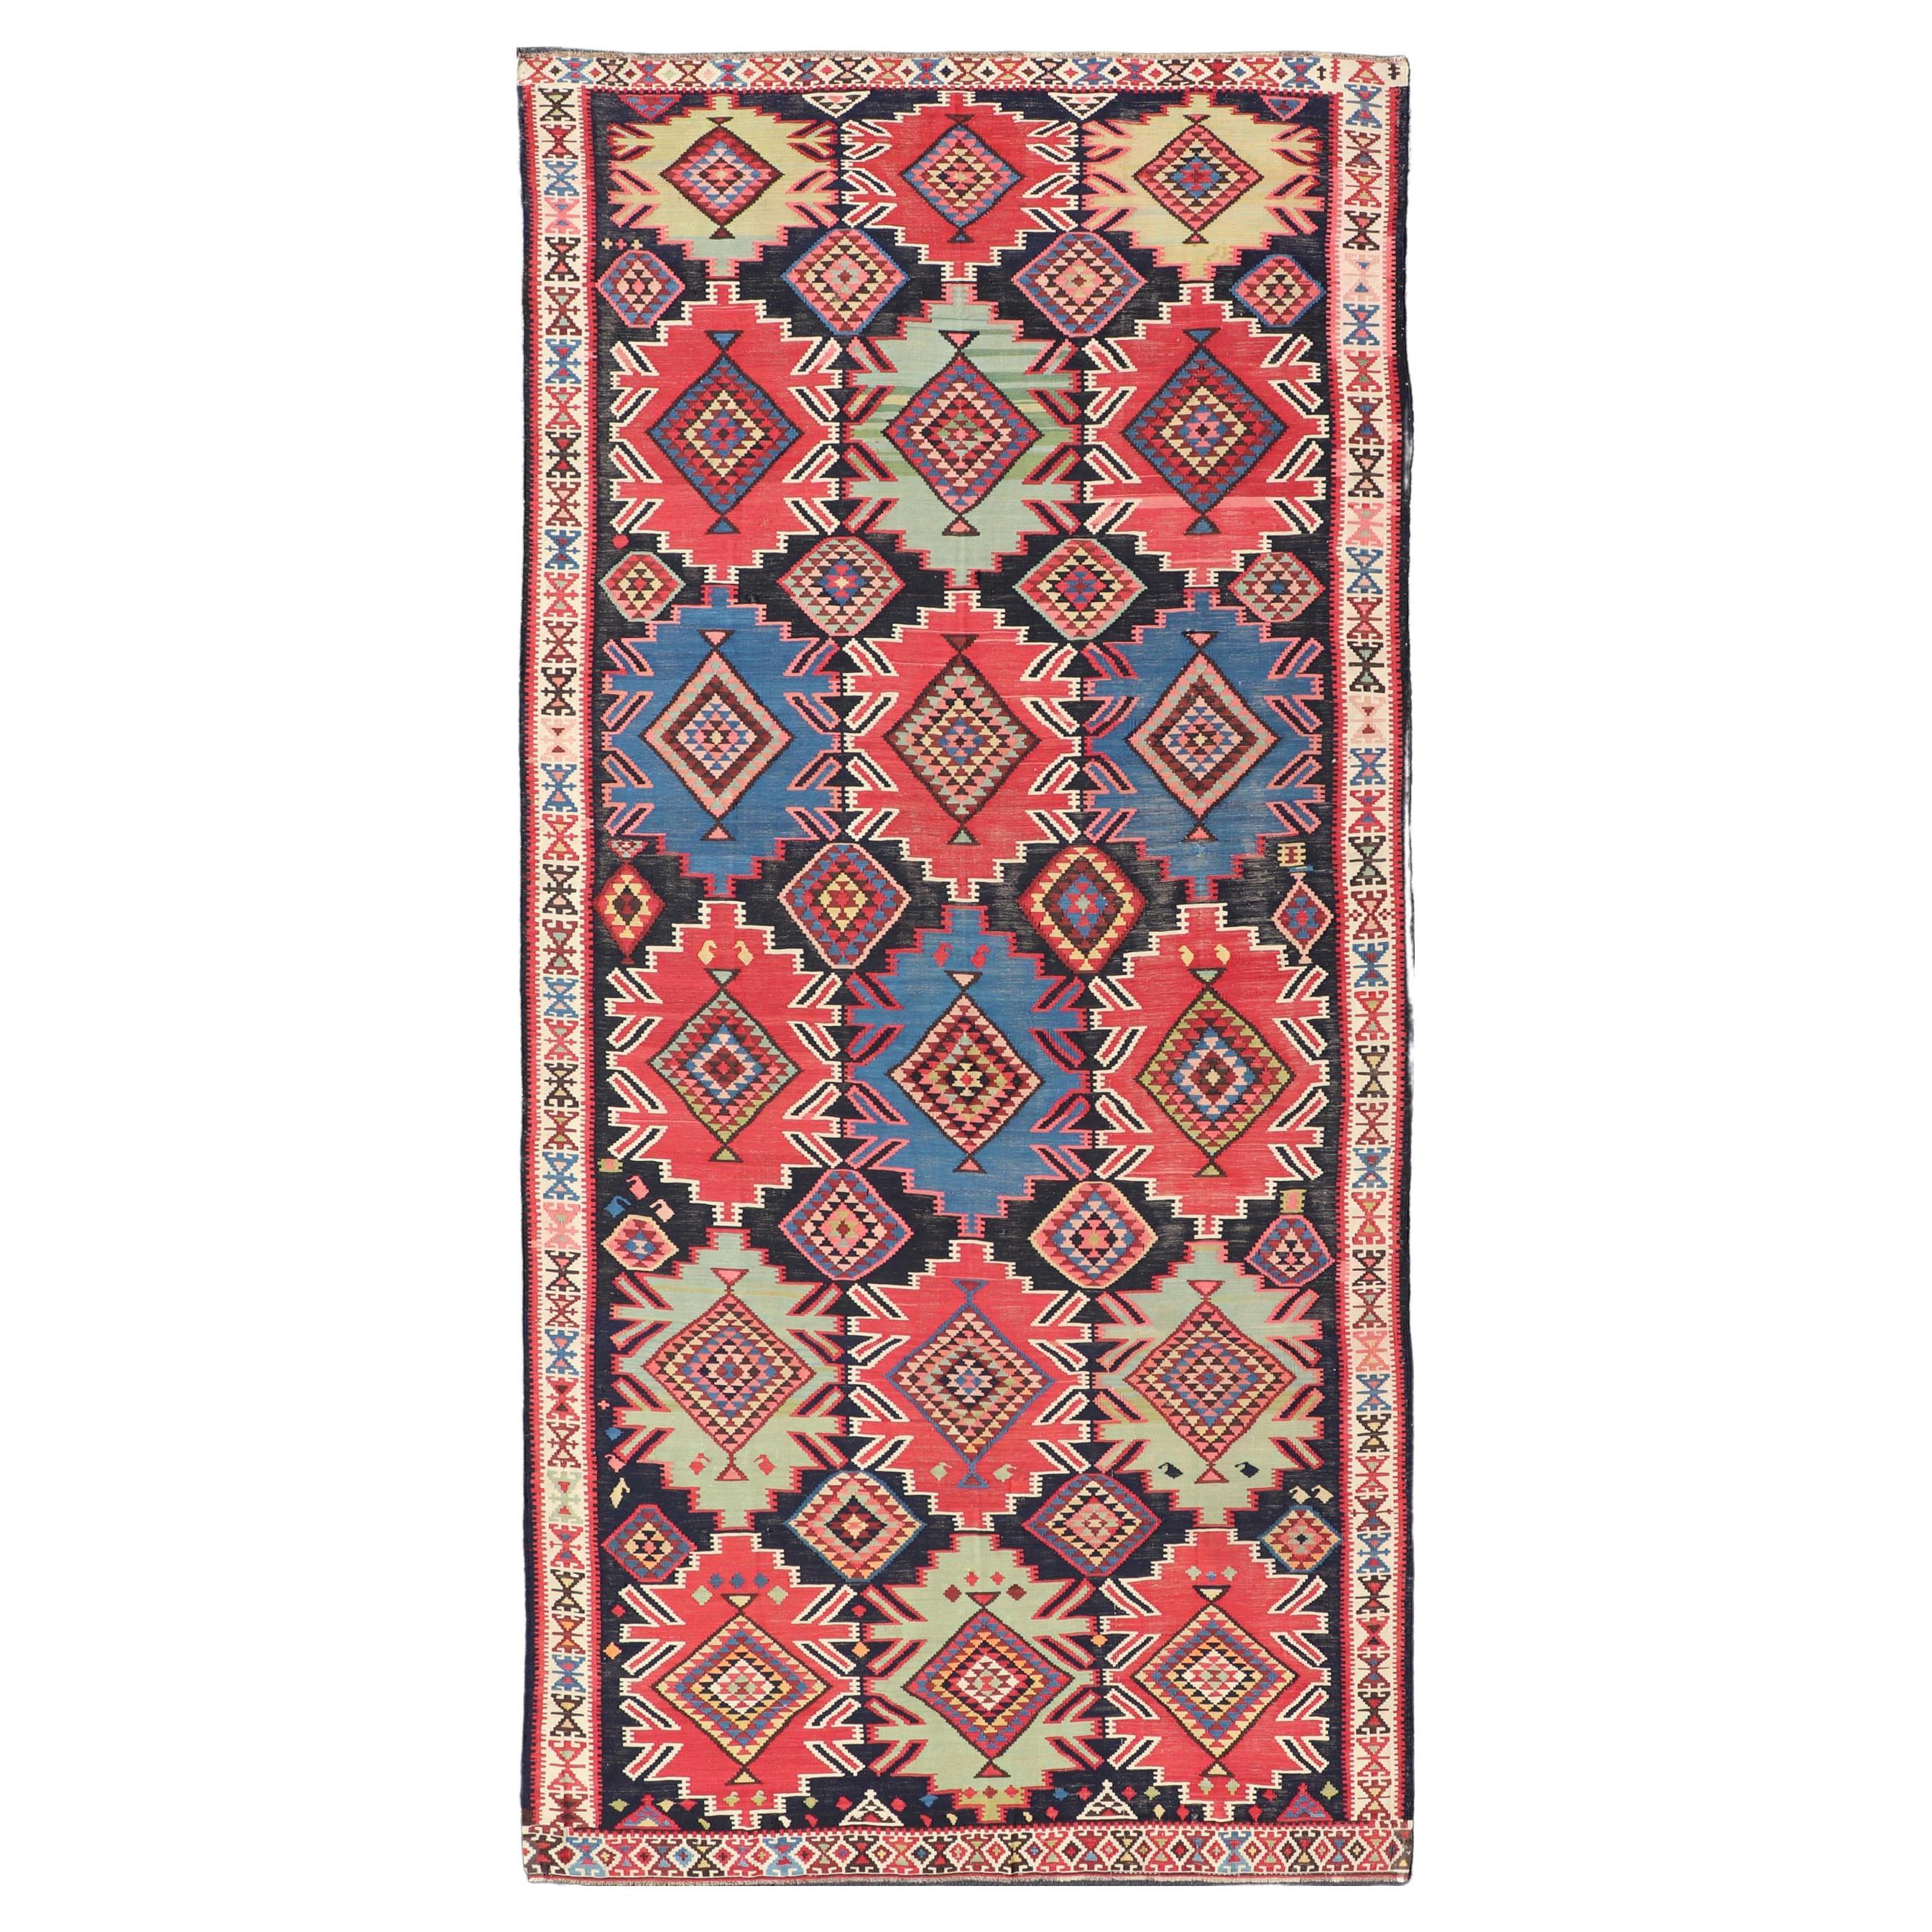 Antiker Kuba-Kelim-Galerie-Teppich aus dem 19. Jahrhundert mit lebhaften Farben